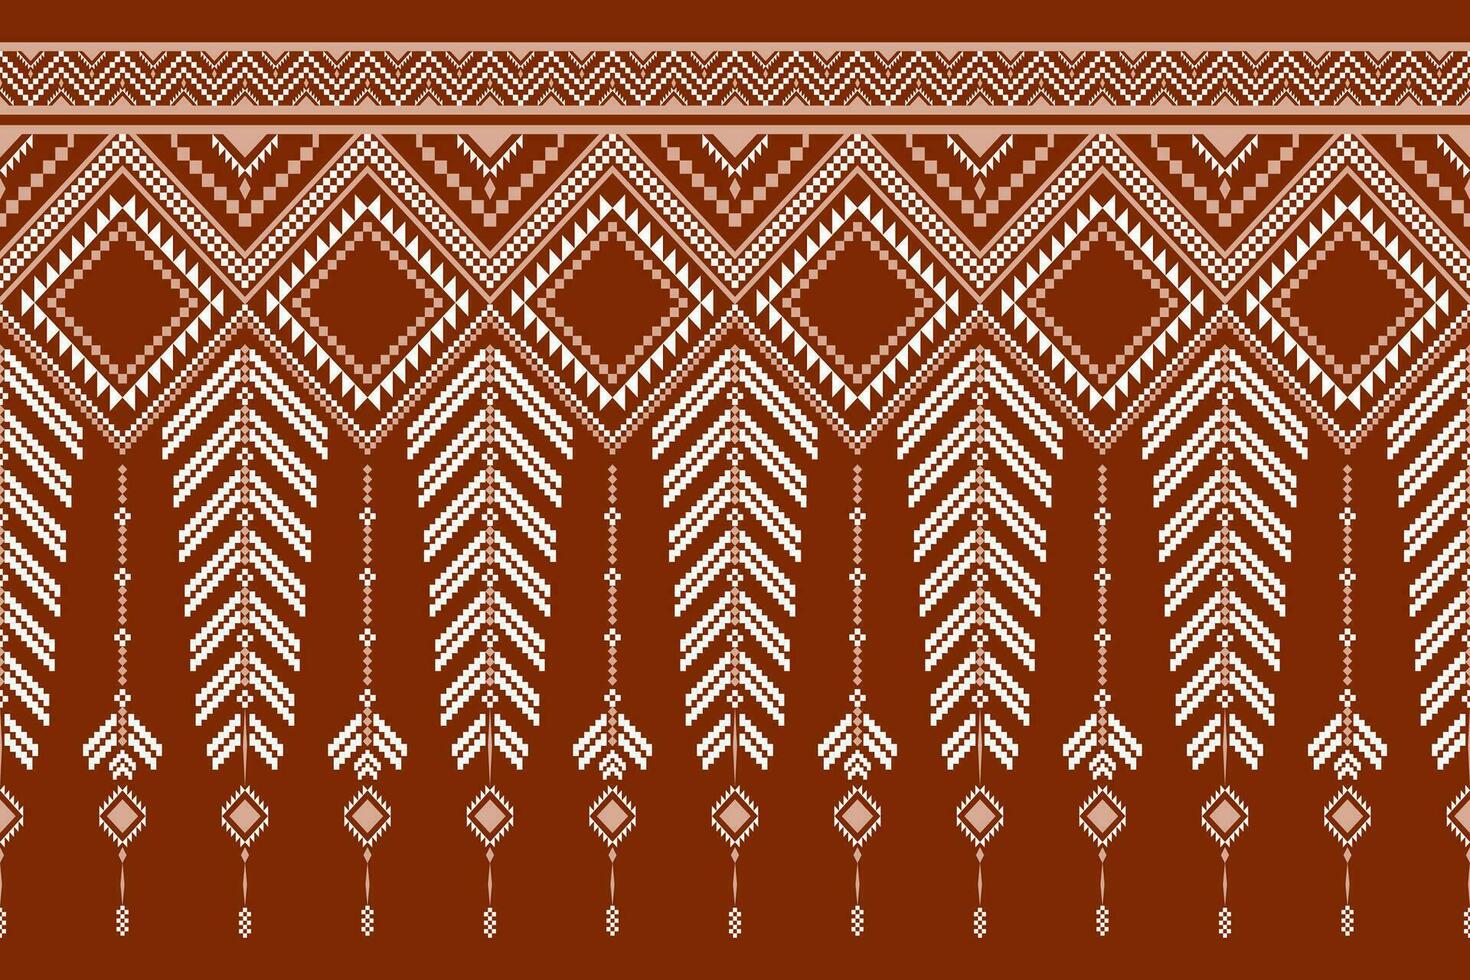 Kreuz Stich bunt geometrisch traditionell ethnisch Muster Ikat nahtlos Muster abstrakt Design vektor